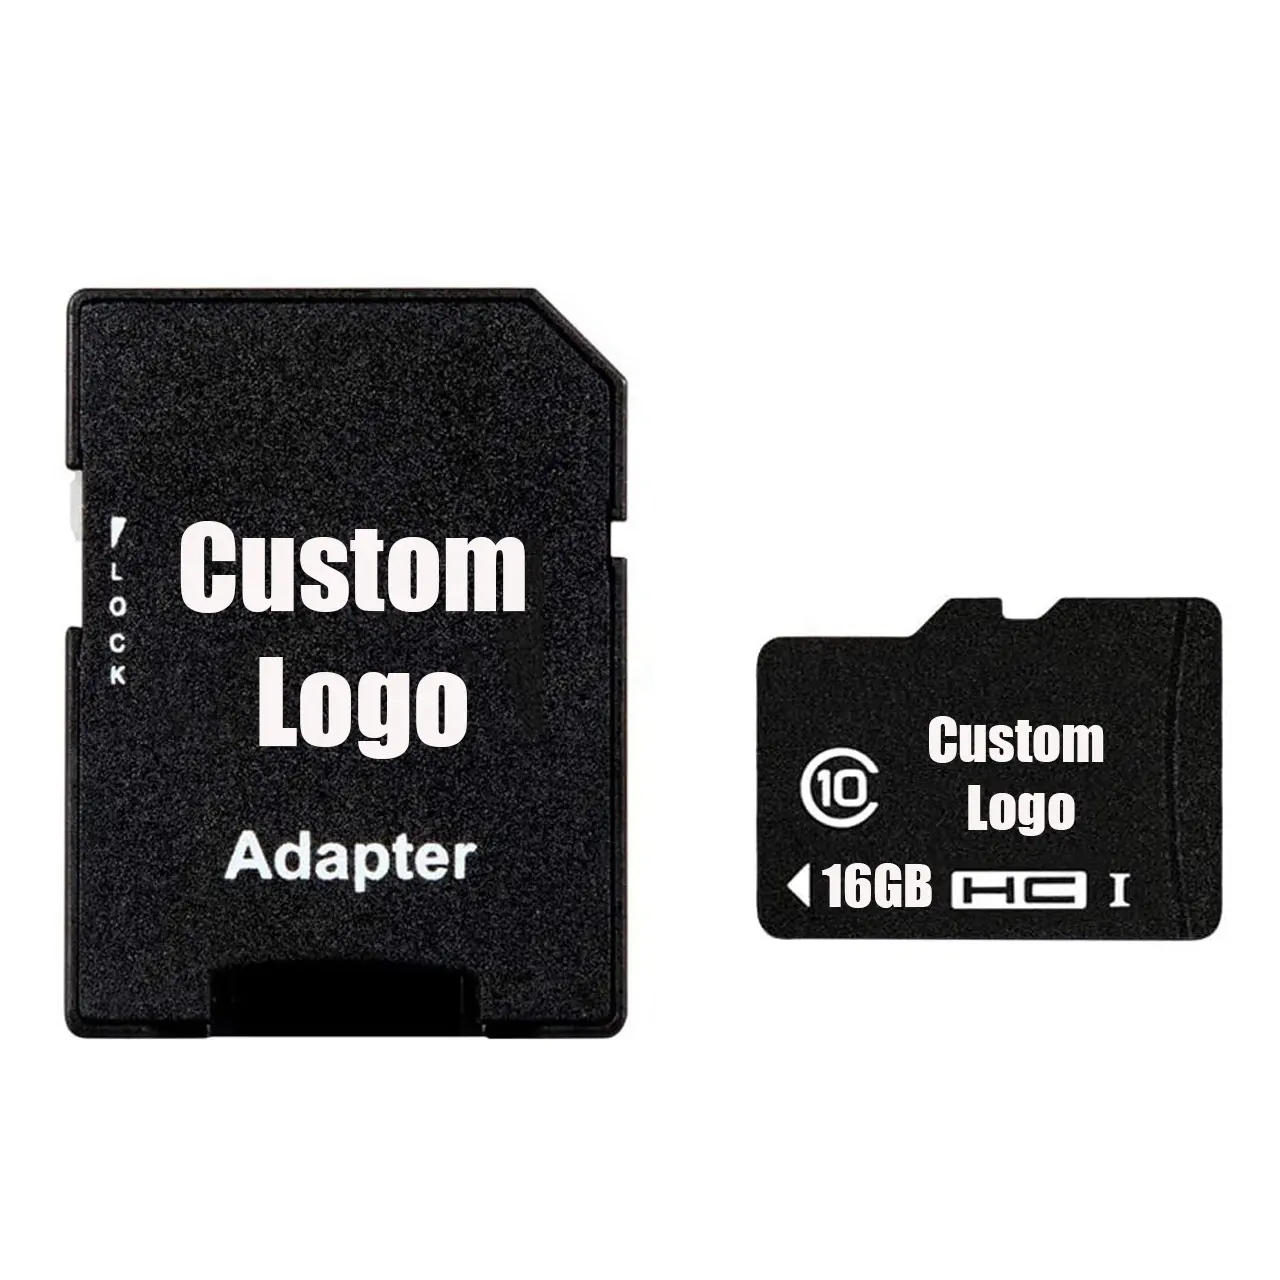 Özel LOGO 128MB 1GB 2GB 4GB 8GB 16GB 32GB 64GB 128GB TF hafıza kartı oyun cihazları güvenlik kamera 4K Video hoparlör